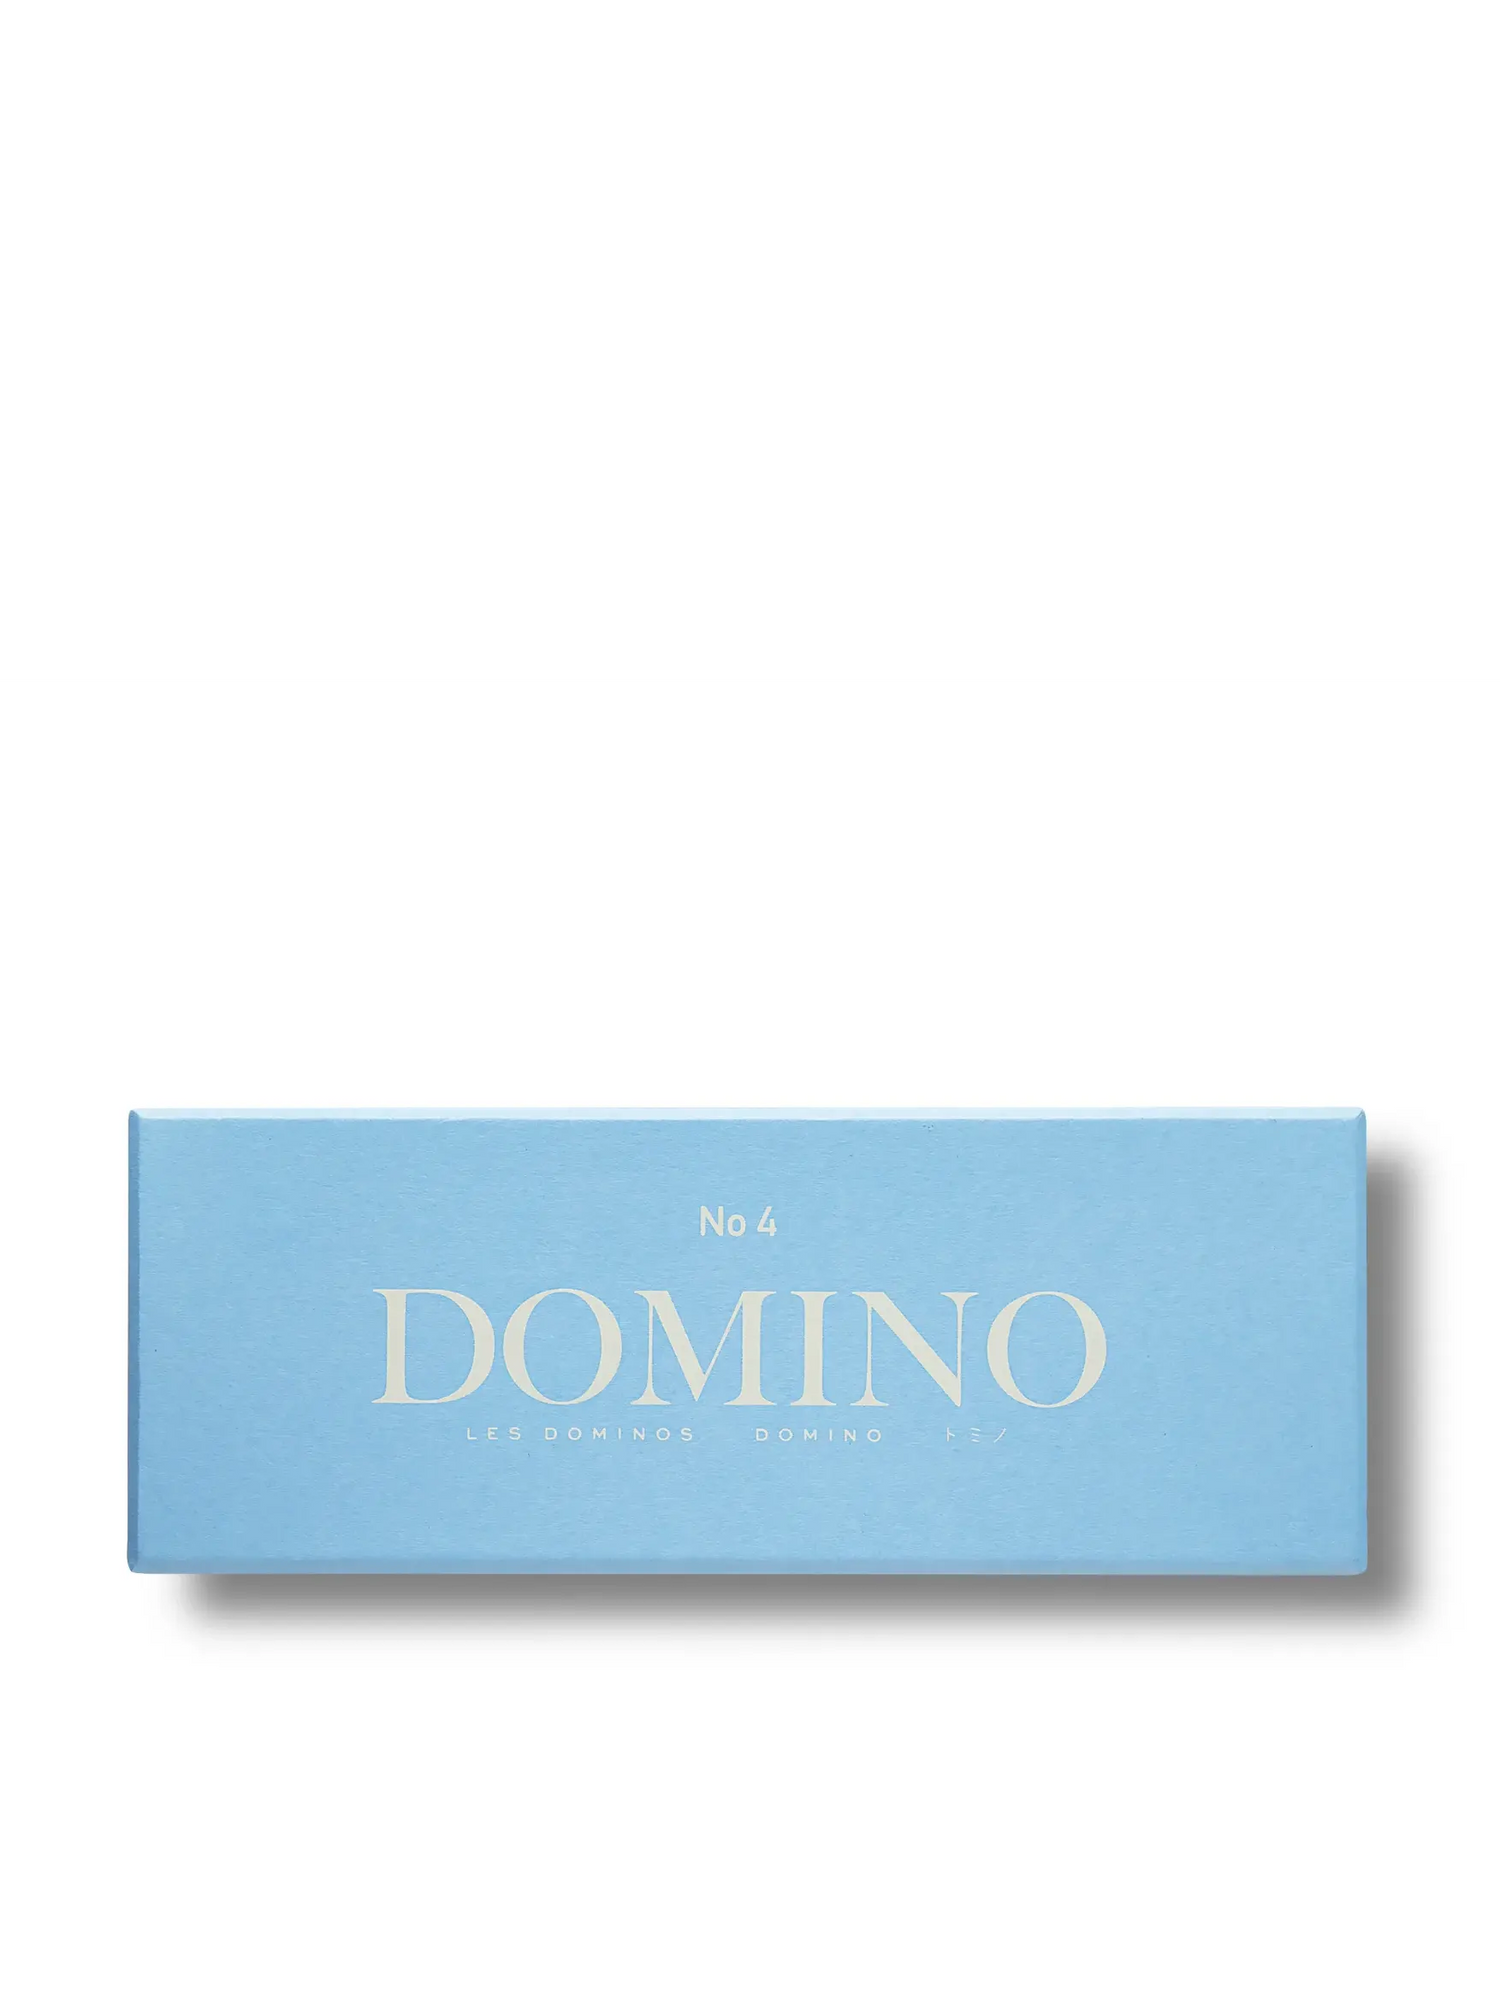 Domino, board game